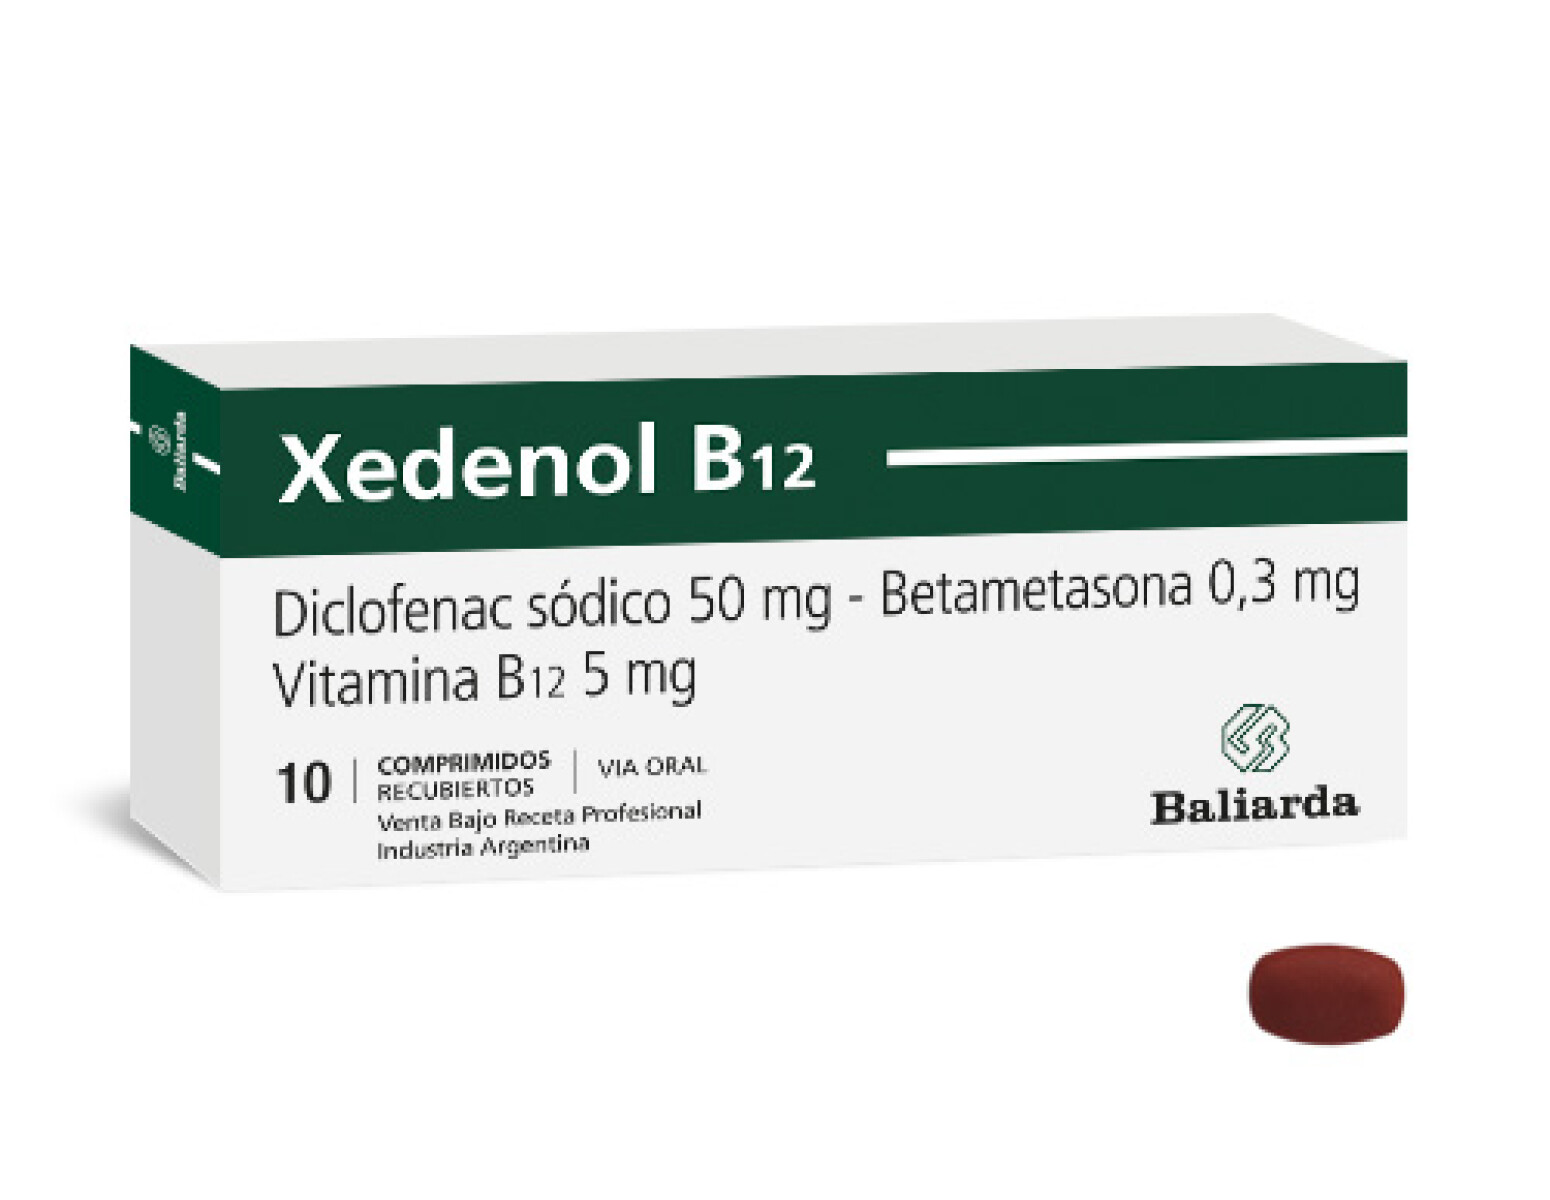 Xedenol B12 